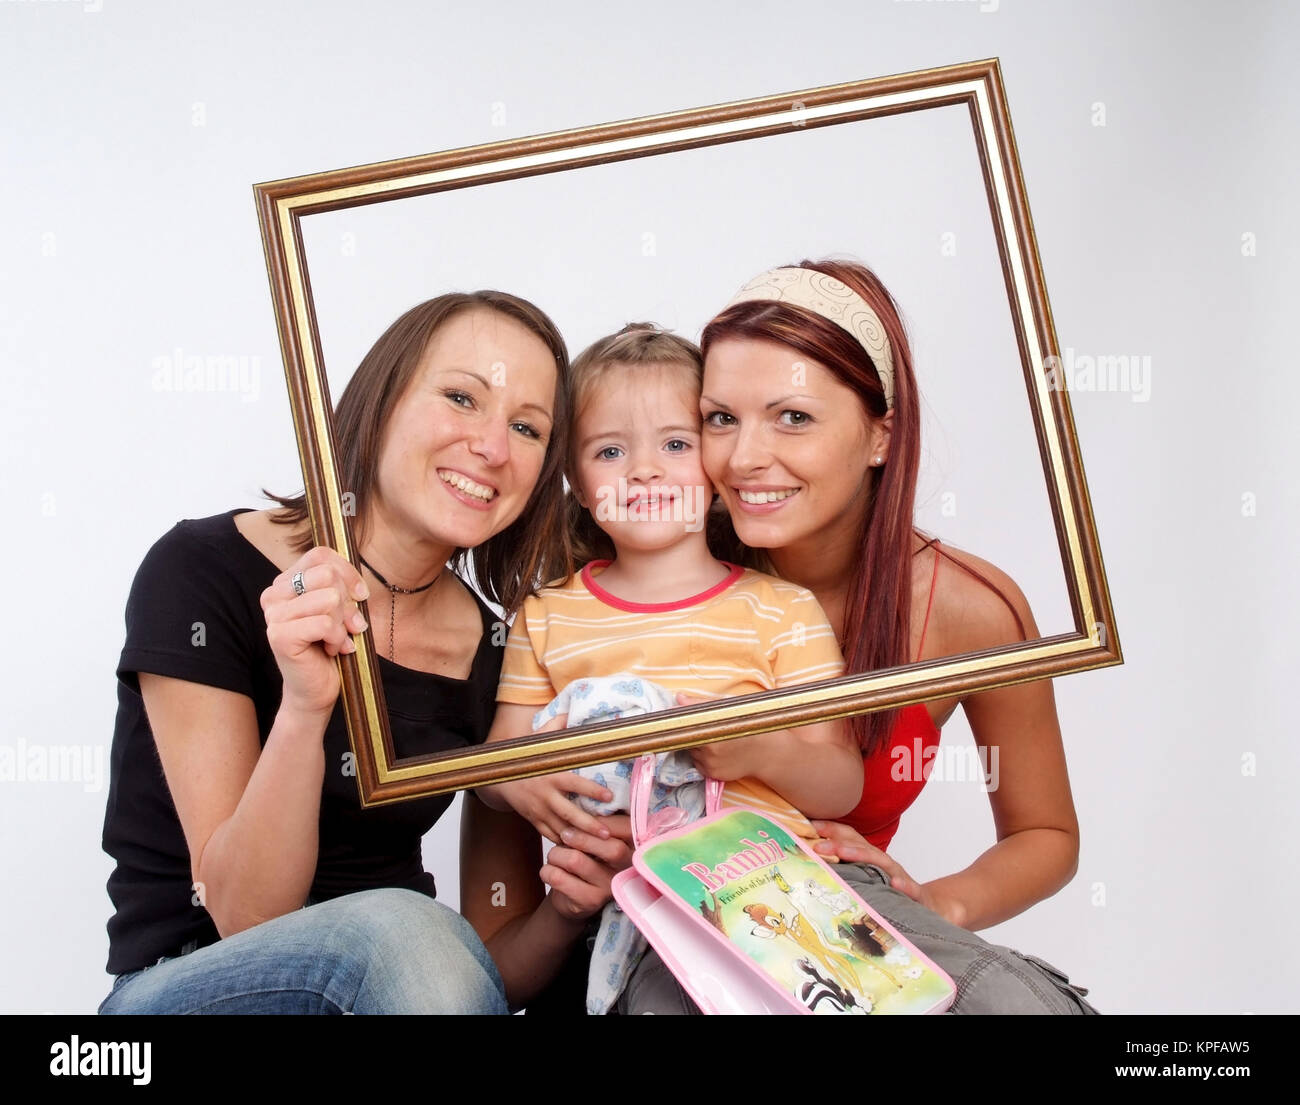 Zwei Frauen mit Kind im Bilderrahmen - women with little girl in a picture frame Stock Photo